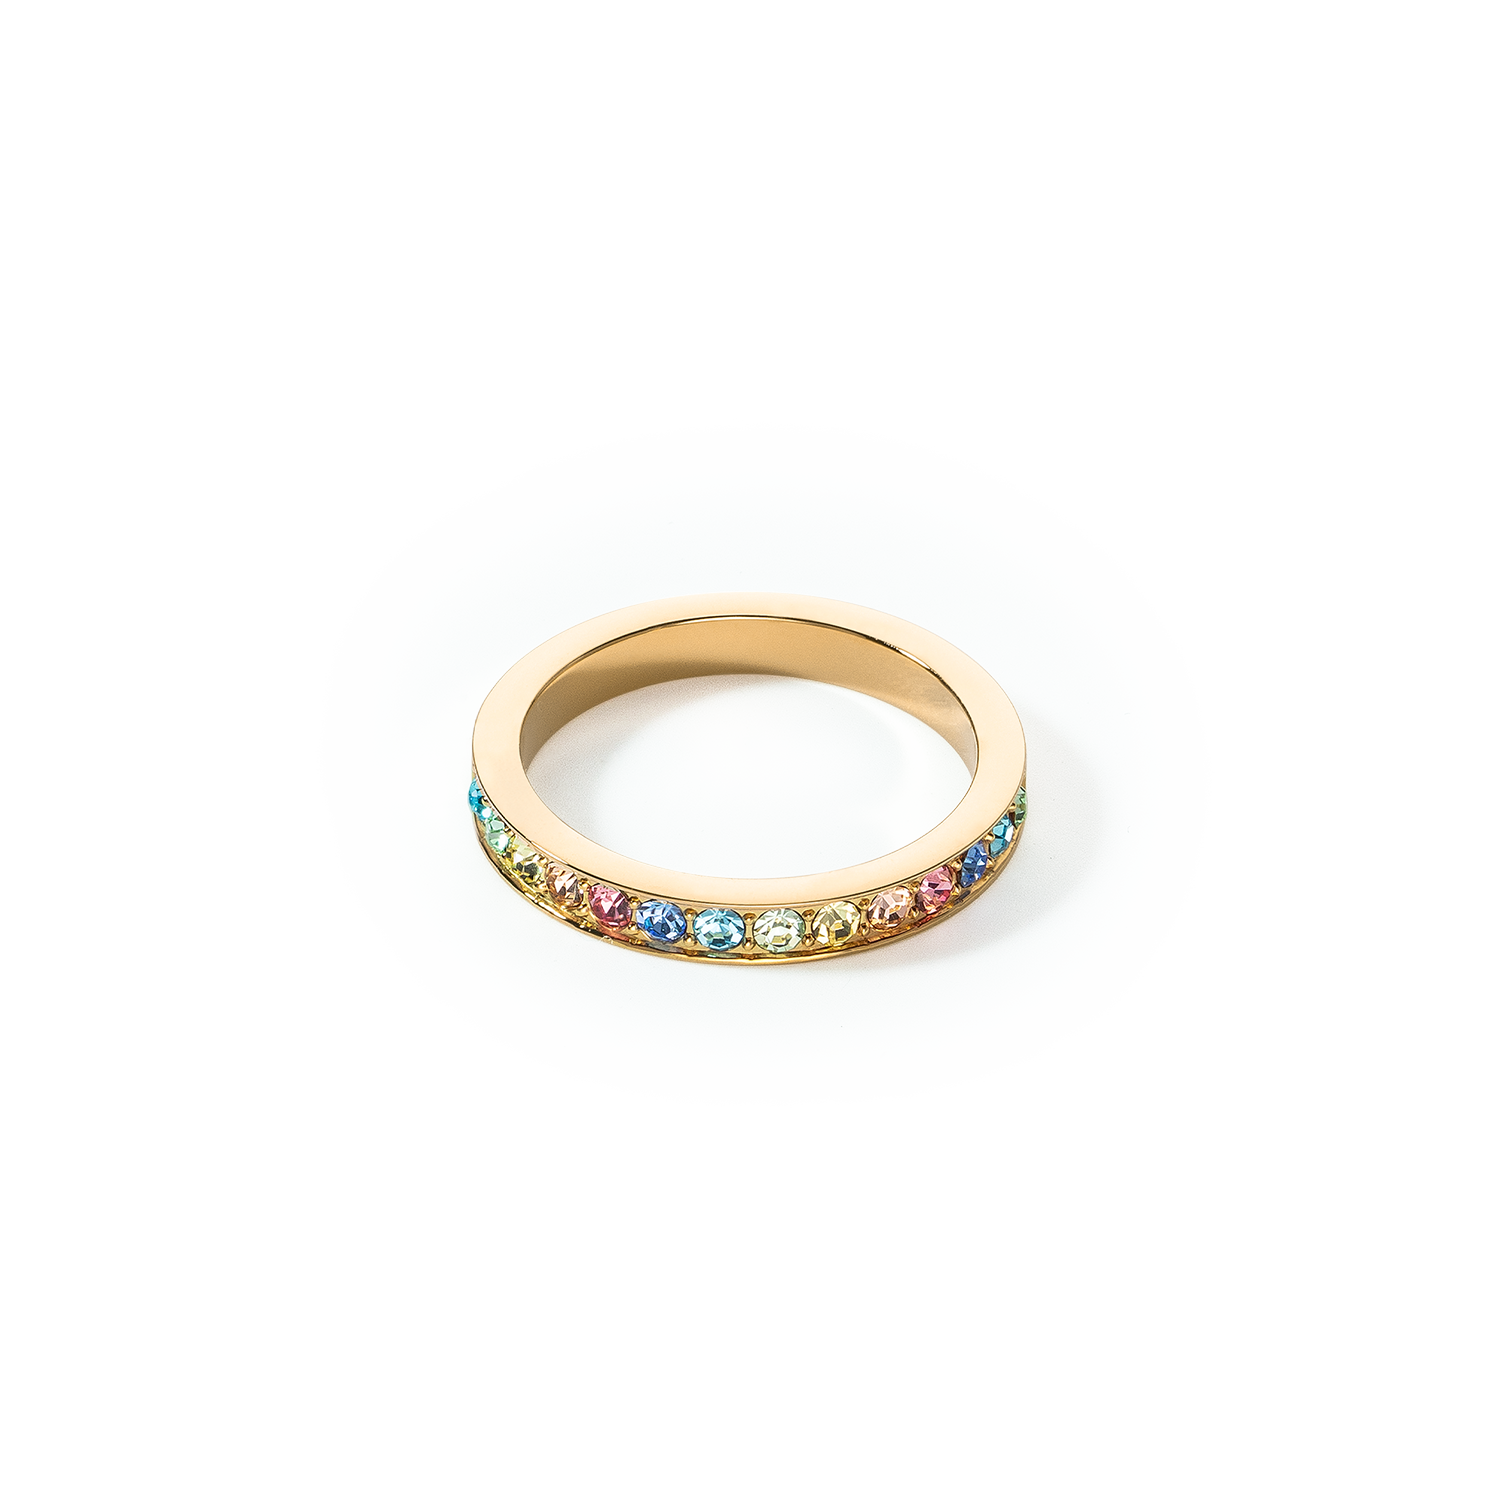 Ring Edelstahl & Kristalle slim gold multicolor pastell